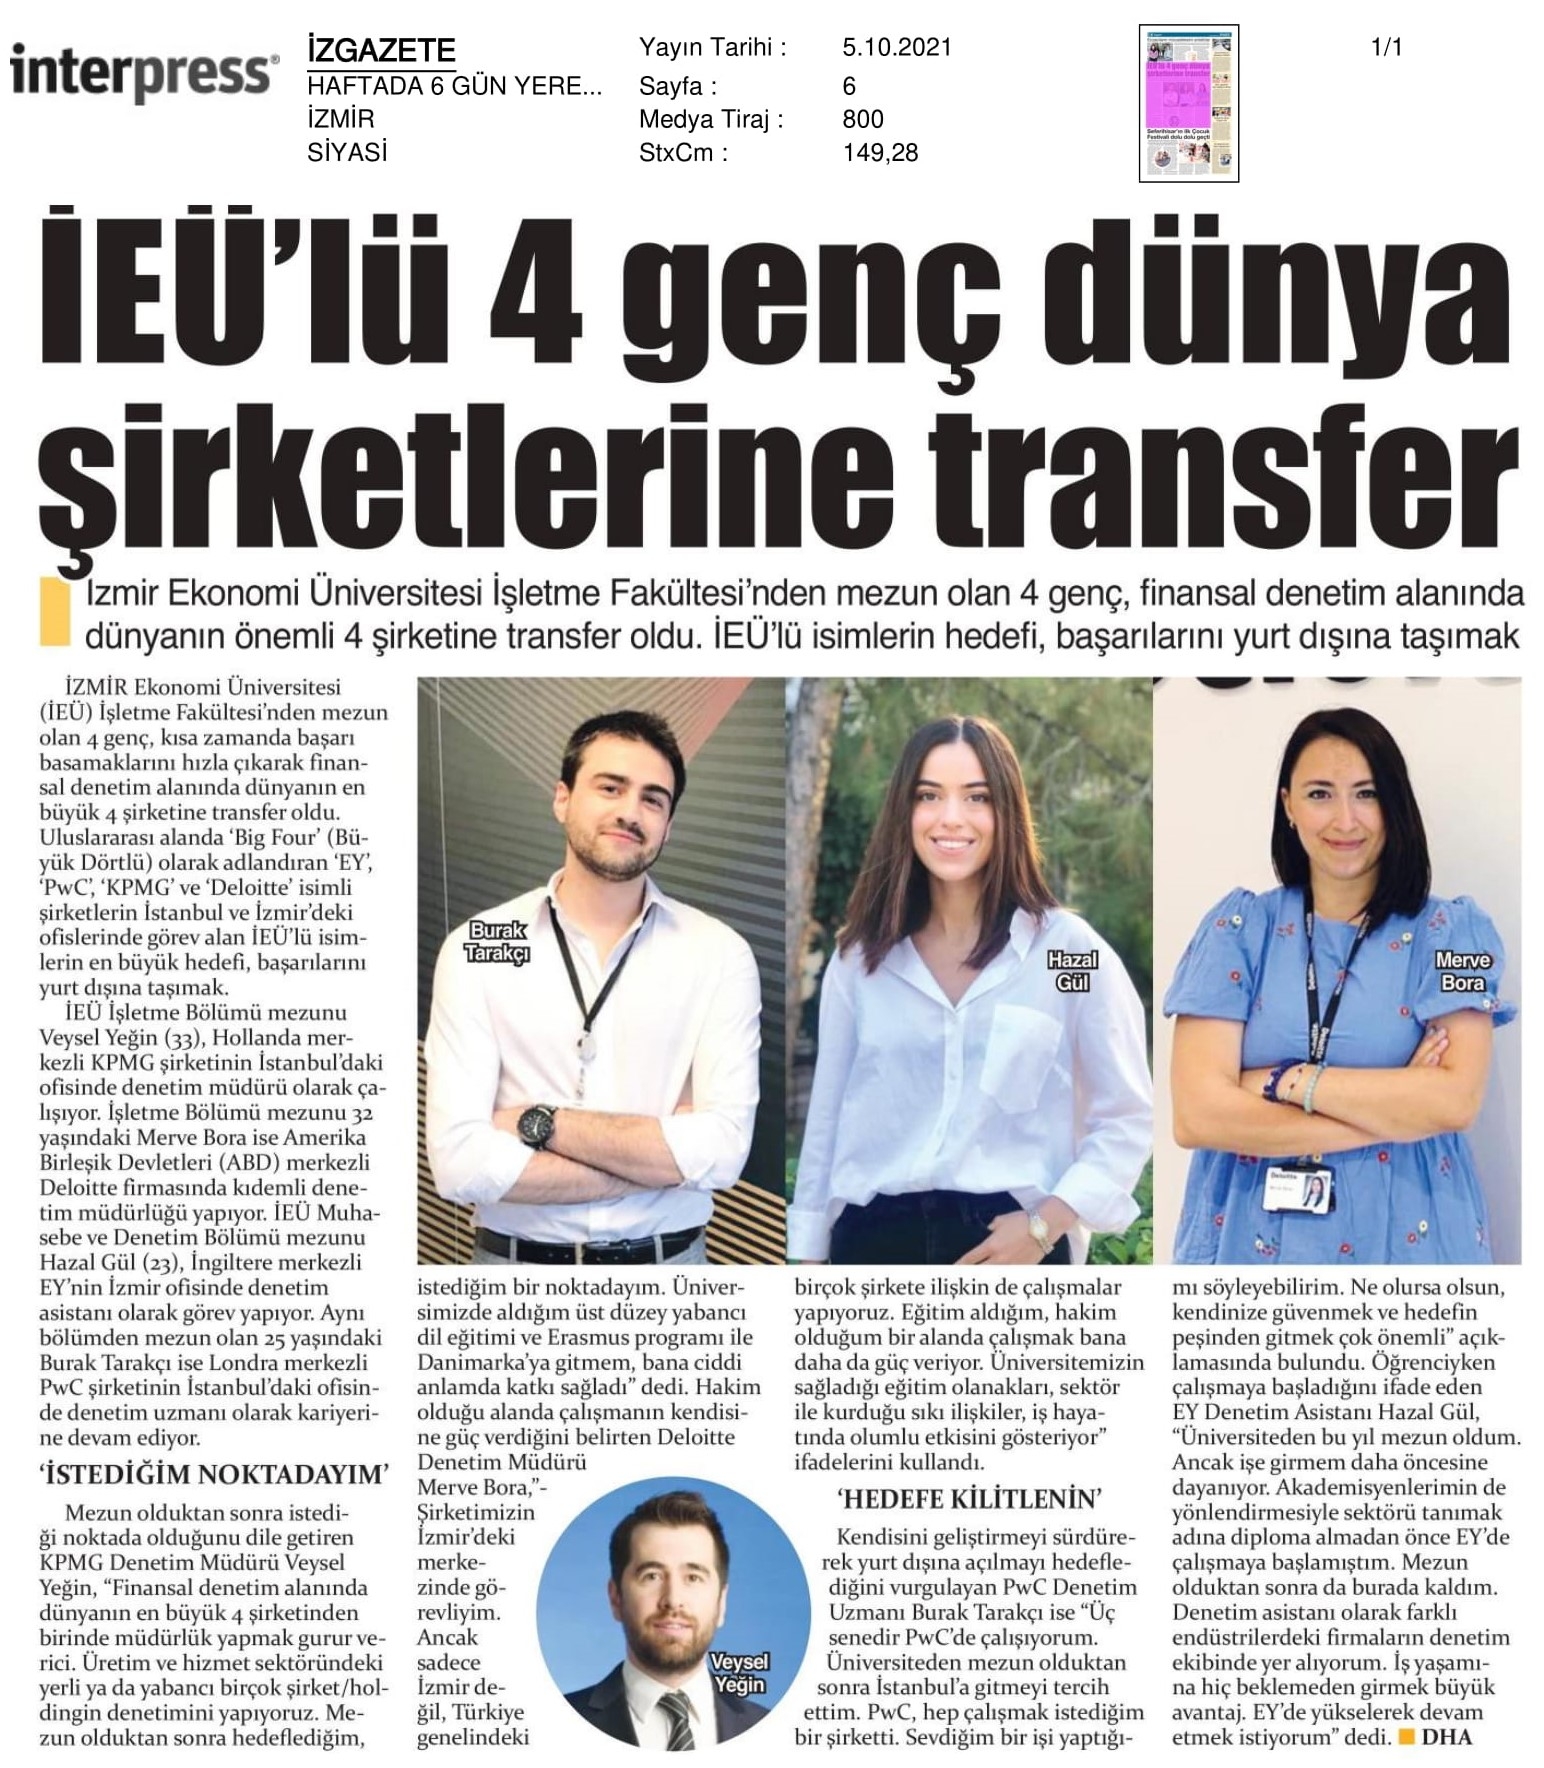 İzmir Ekonomi’den ‘4 Büyüklere’